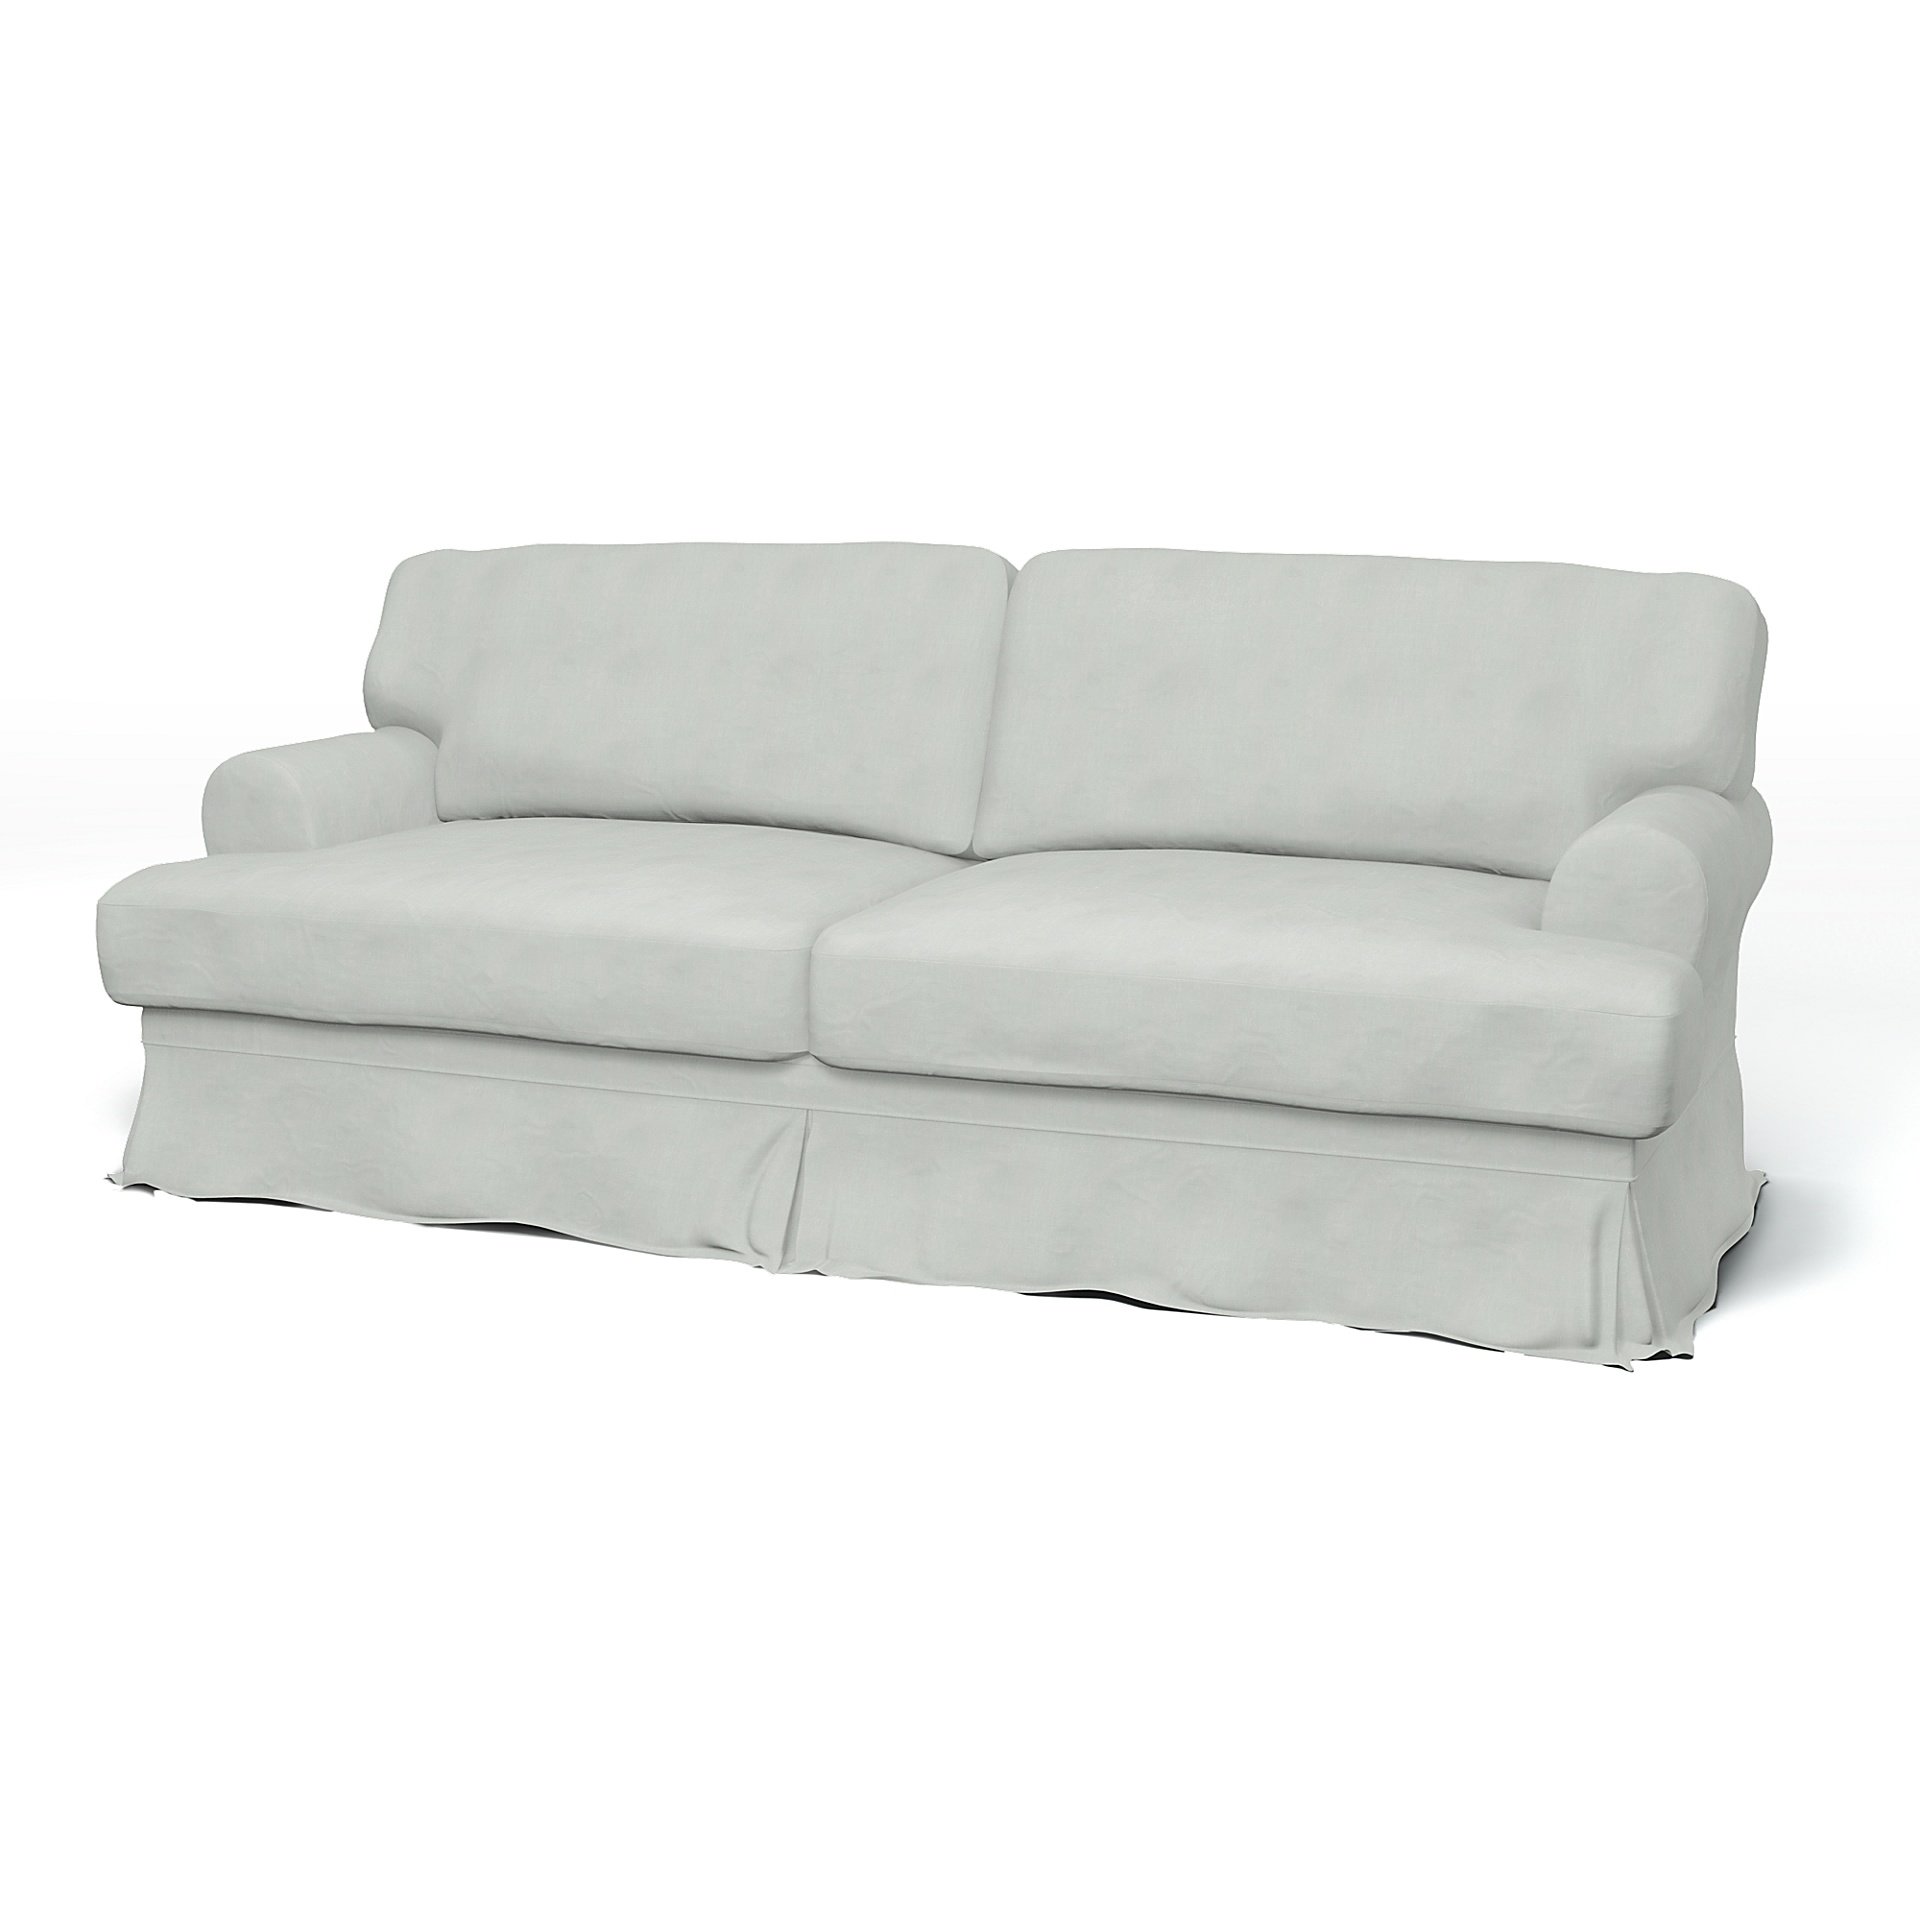 IKEA - Ekeskog 3 Seater Sofa Cover, Silver Grey, Linen - Bemz